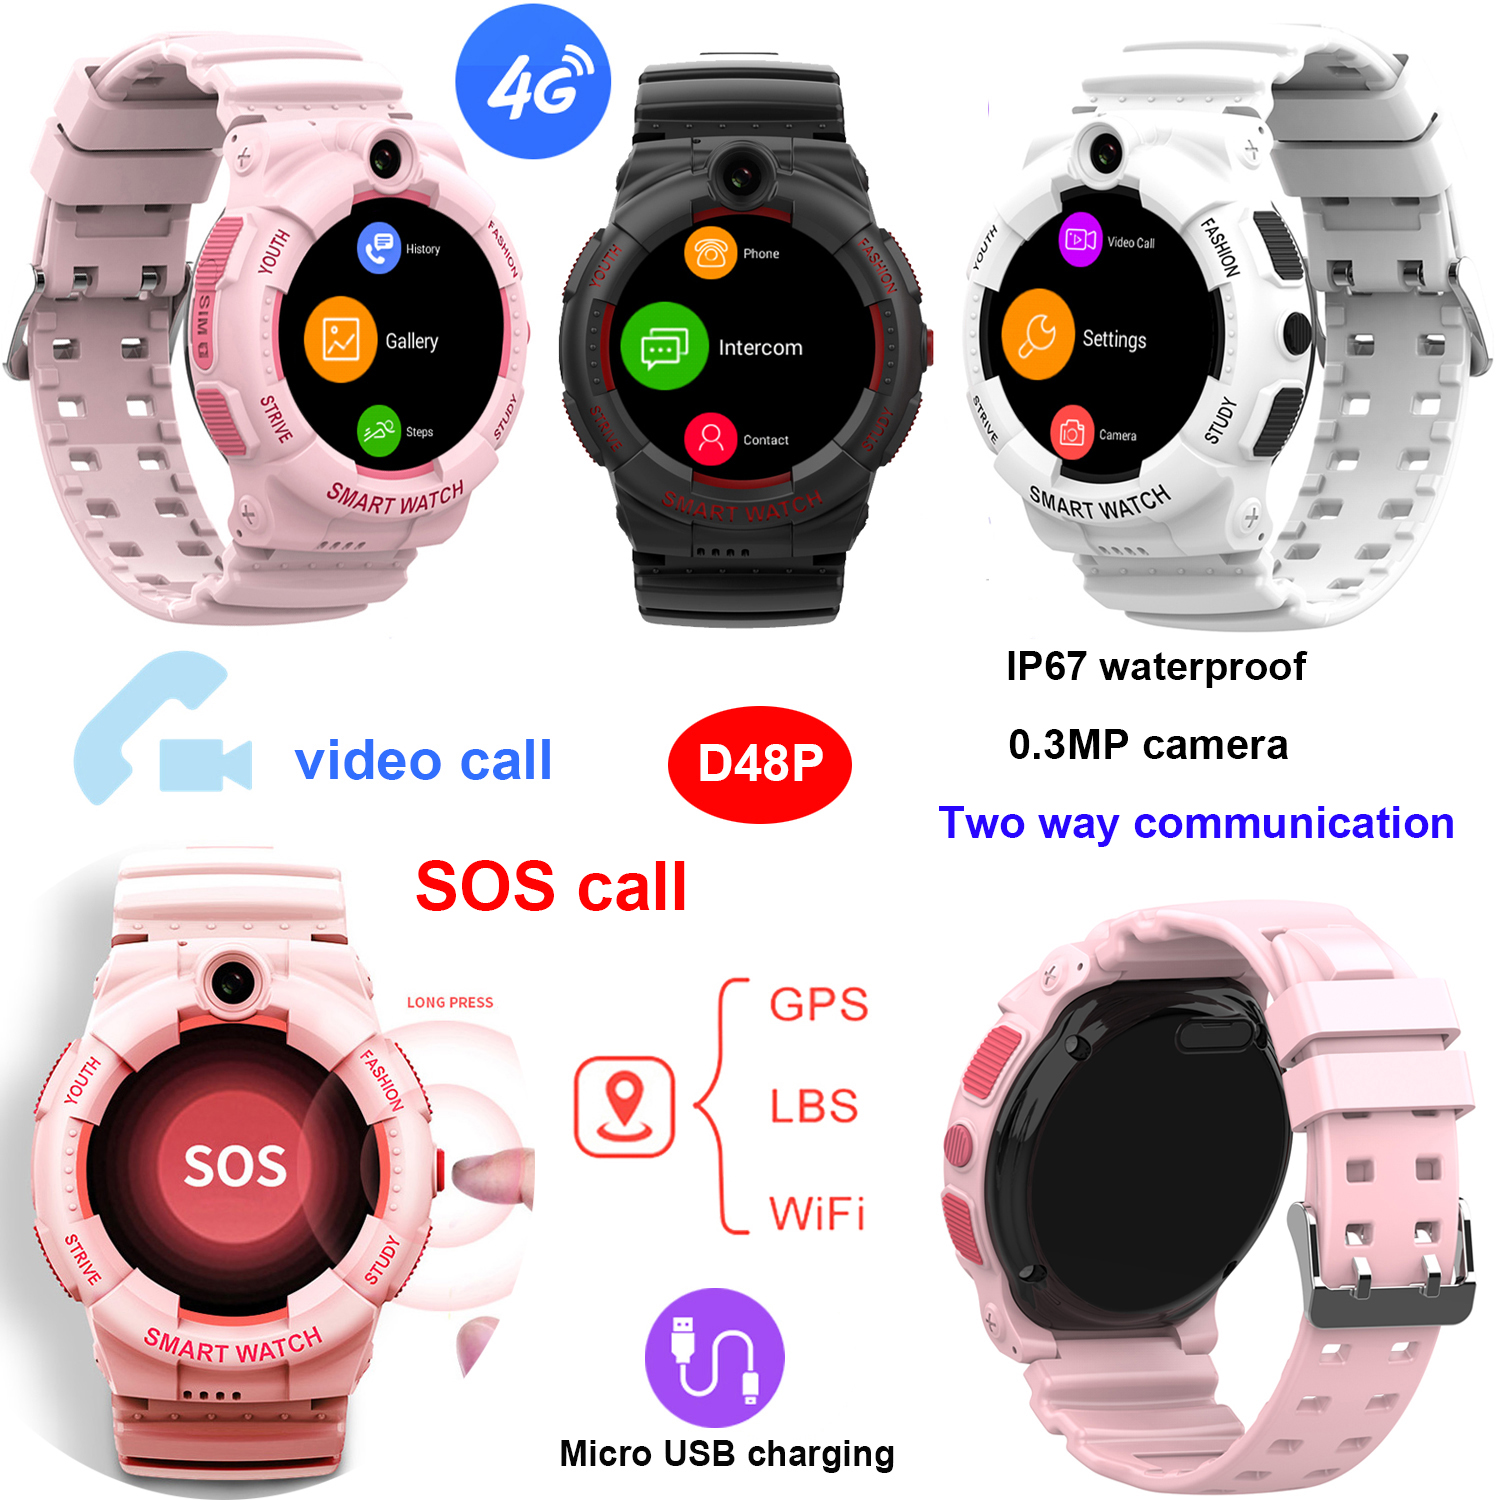 New Arrival 4G Waterproof Smart Watch GPS Tracker for Kids D48P